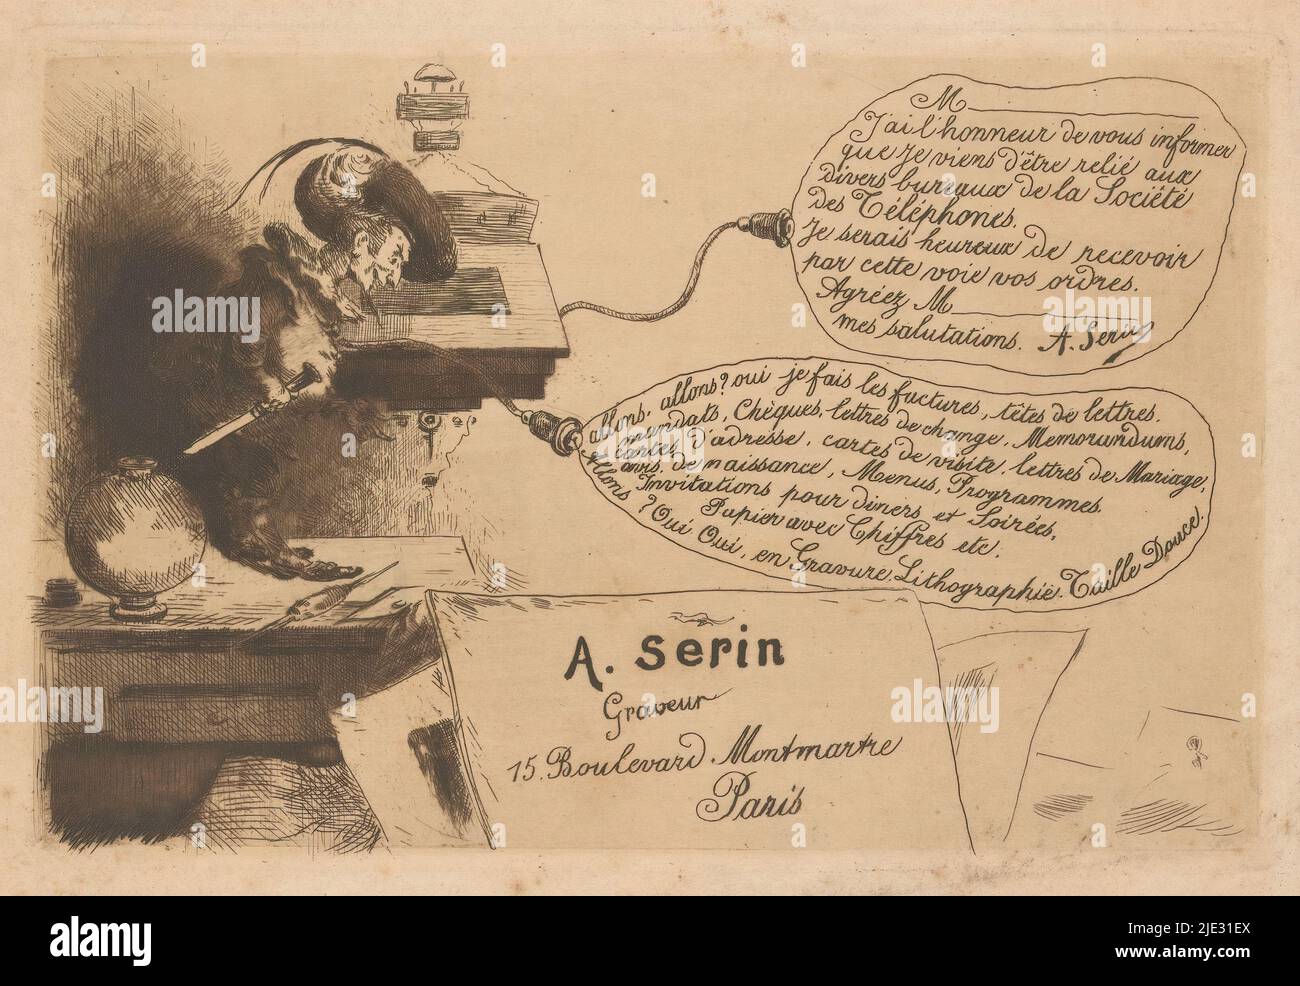 Ankündigung des Telefonanschlusses von Adolphe Serin, Kupferstecher in Paris, auf der Werkbank eines Grafikers, eine Ätznadel im Vordergrund, steht ein Zwerg mit einem Burin in der Hand. Er scheint als Herold gekleidet zu sein, möglicherweise ein Hinweis auf die heraldischen Stiche, die Serine ebenfalls produzierte. Über der Werkbank hängt ein Telefon, aus dem zwei Sprechblasen entweichen., Druckerei: Henry SOMM, 1880 - 1885, Papier, Radierung, Trockenpunkt, Höhe 119 mm × Breite 179 mm Stockfoto